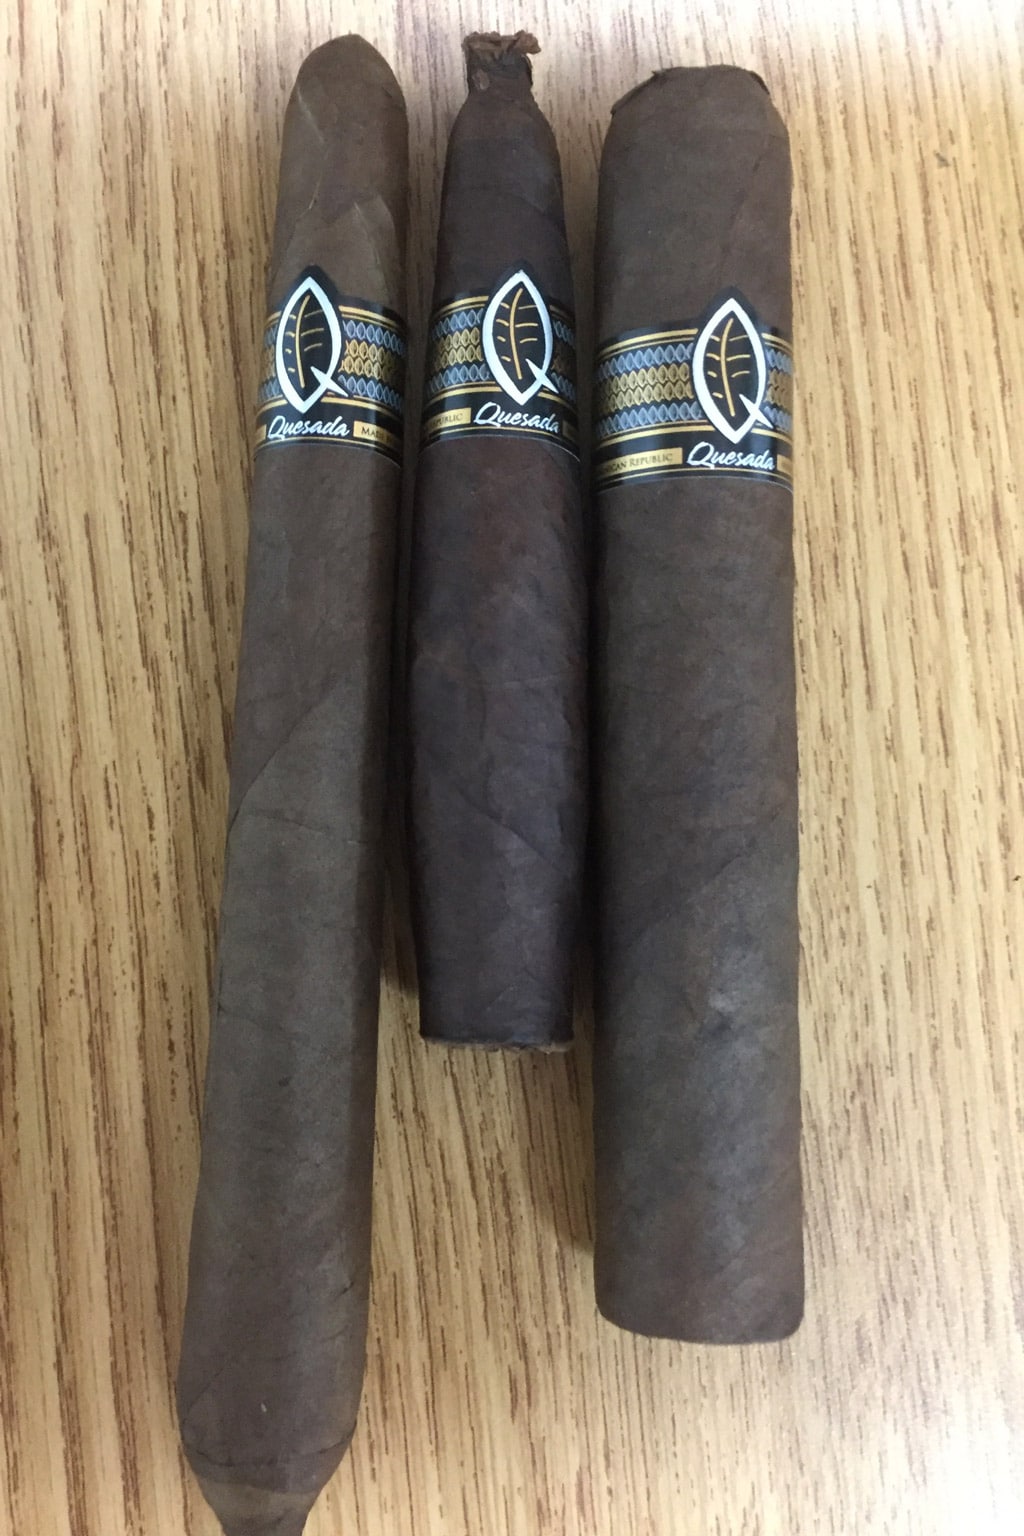 Quesada Q d’etat 2017 cigars